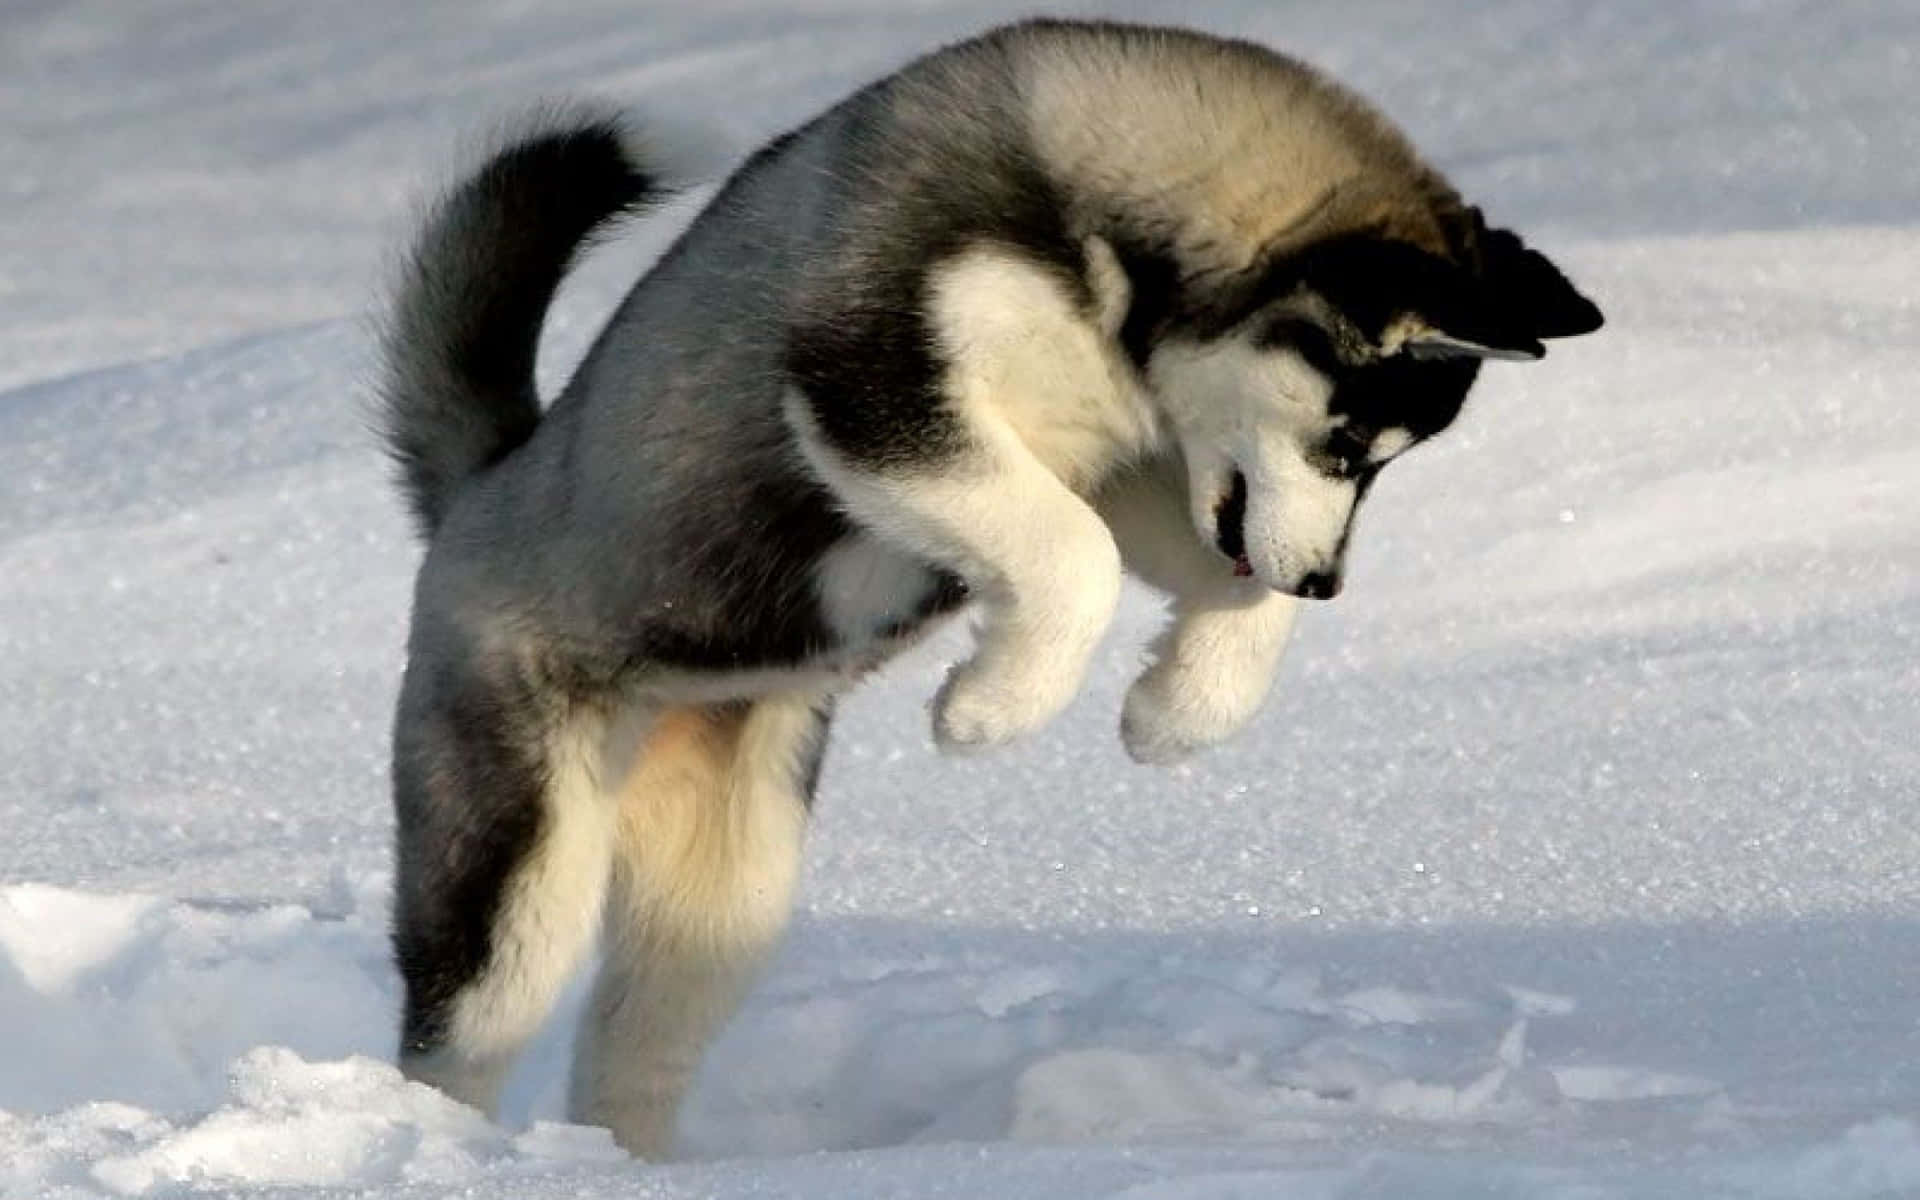 Imagende Un Cachorro De Husky Lindo Jugando En La Nieve.